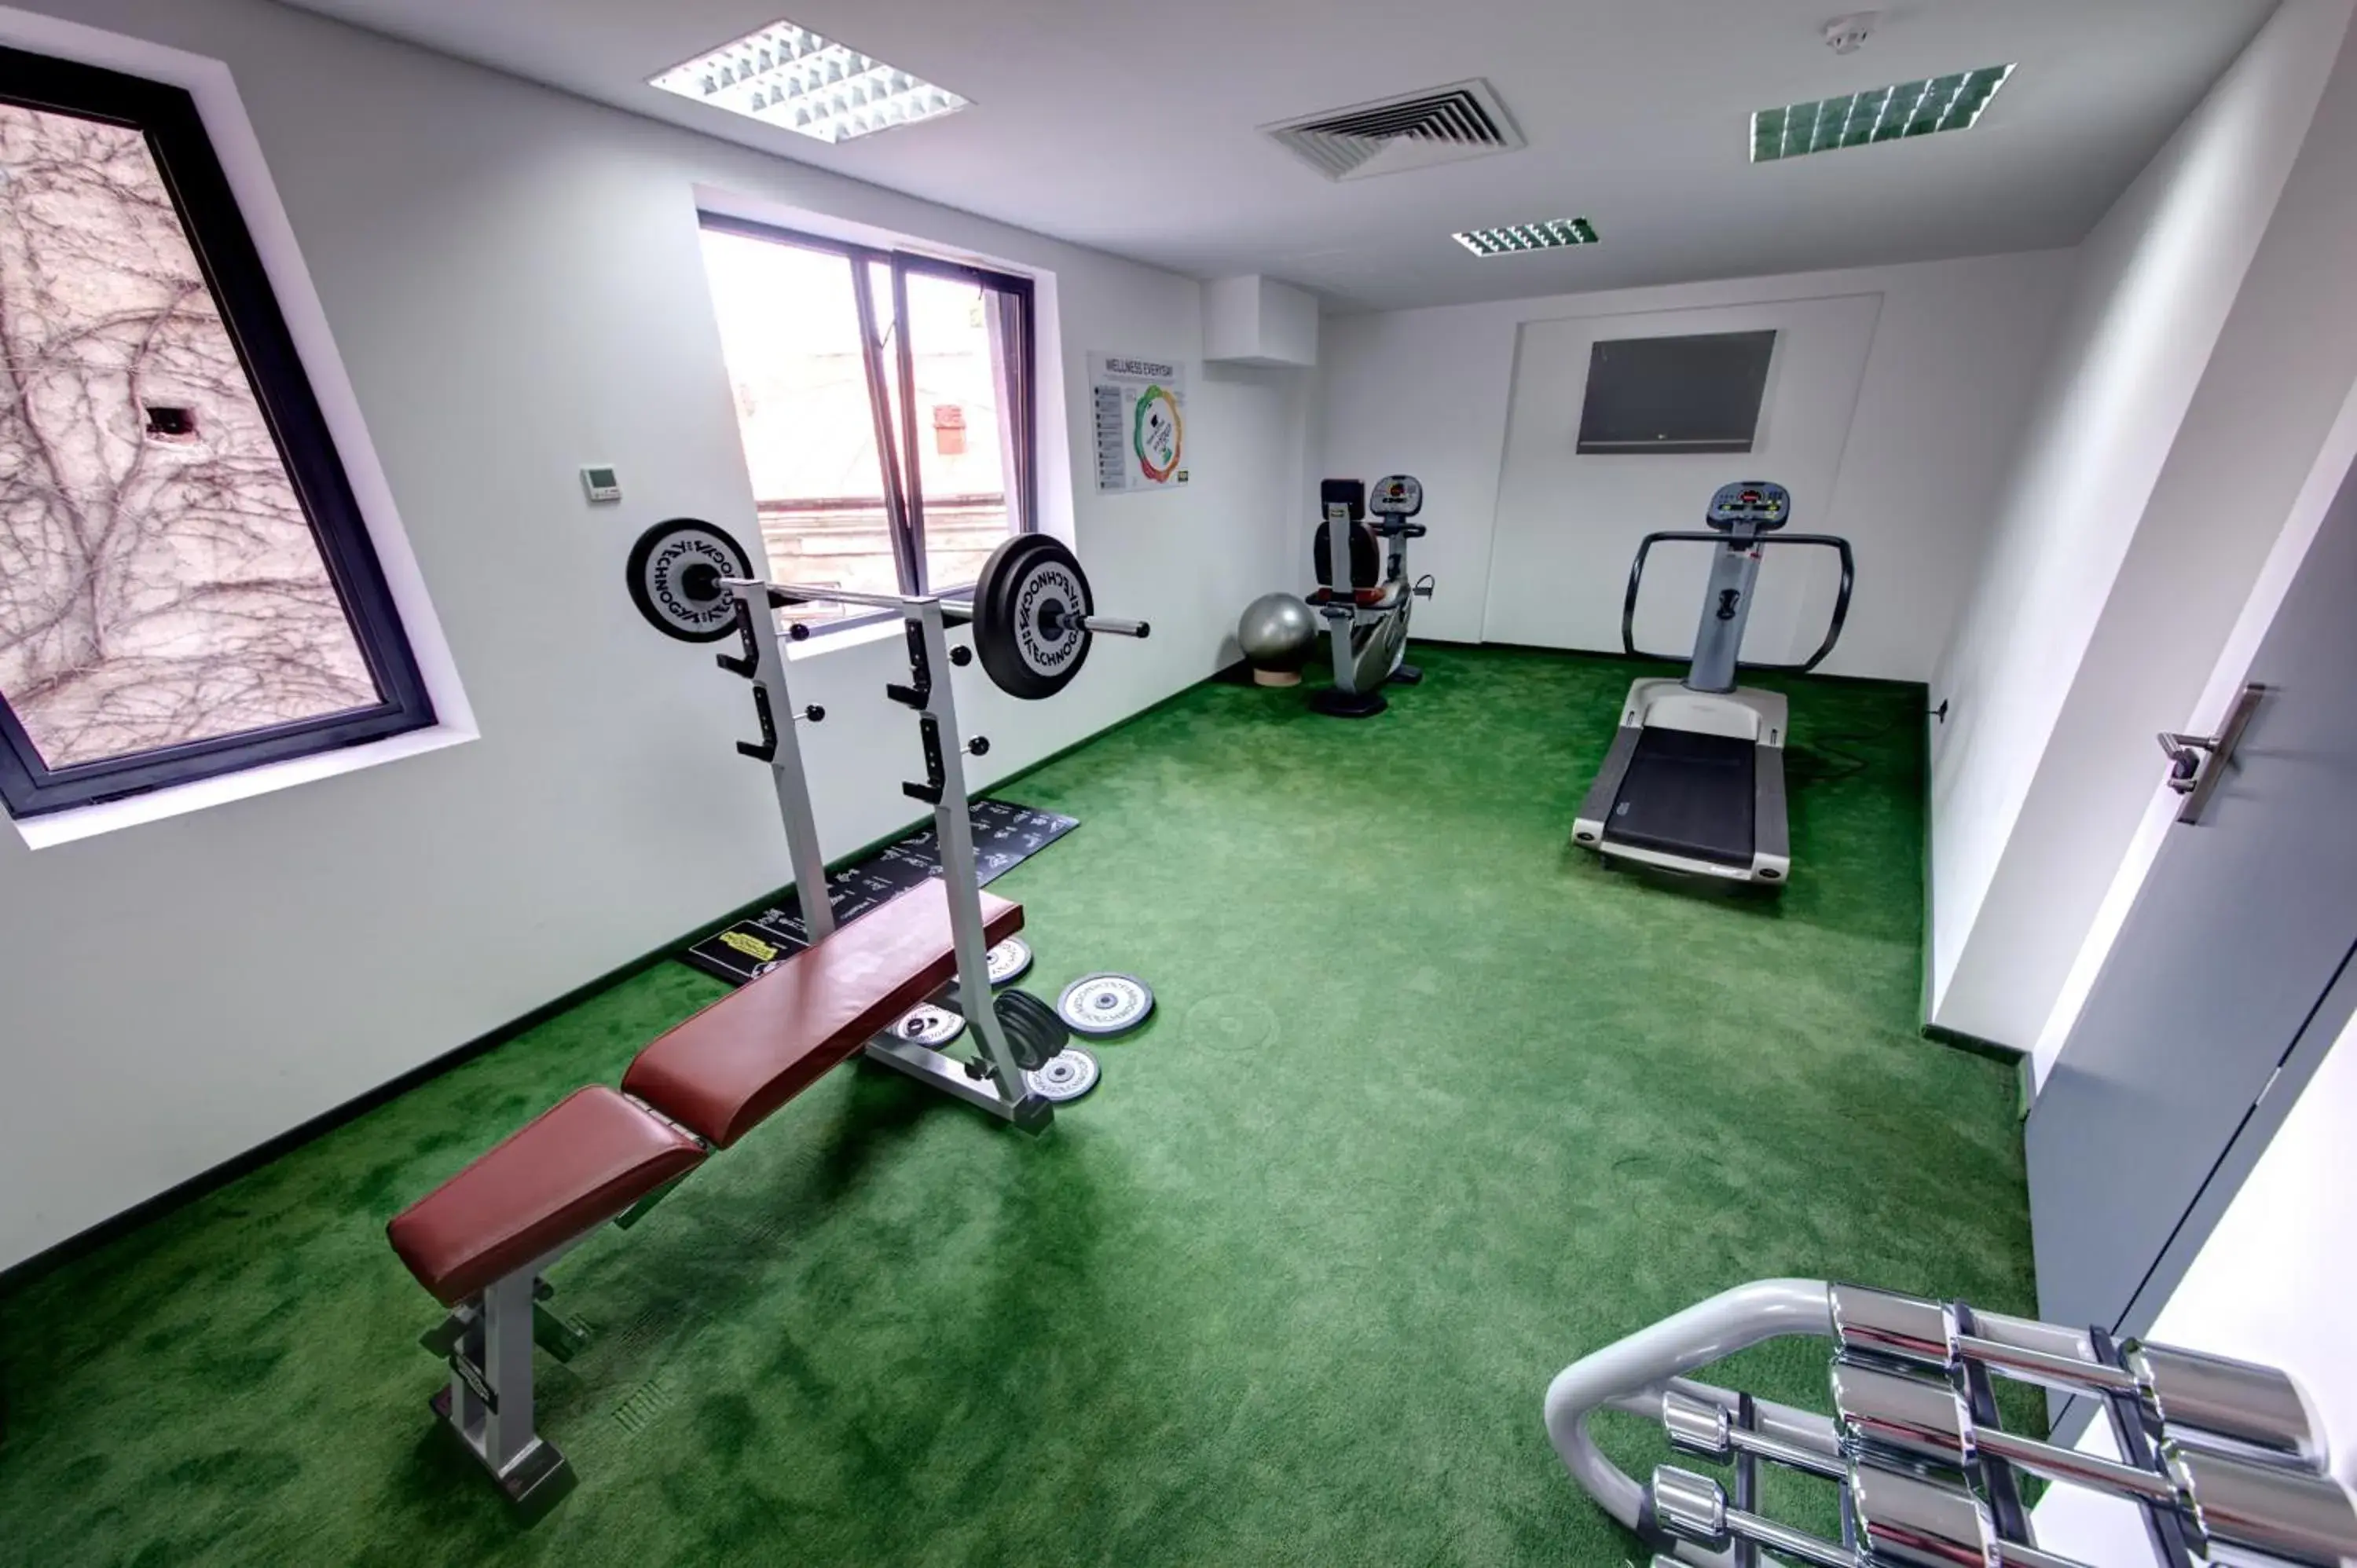 Fitness centre/facilities, Fitness Center/Facilities in Sarroglia Hotel